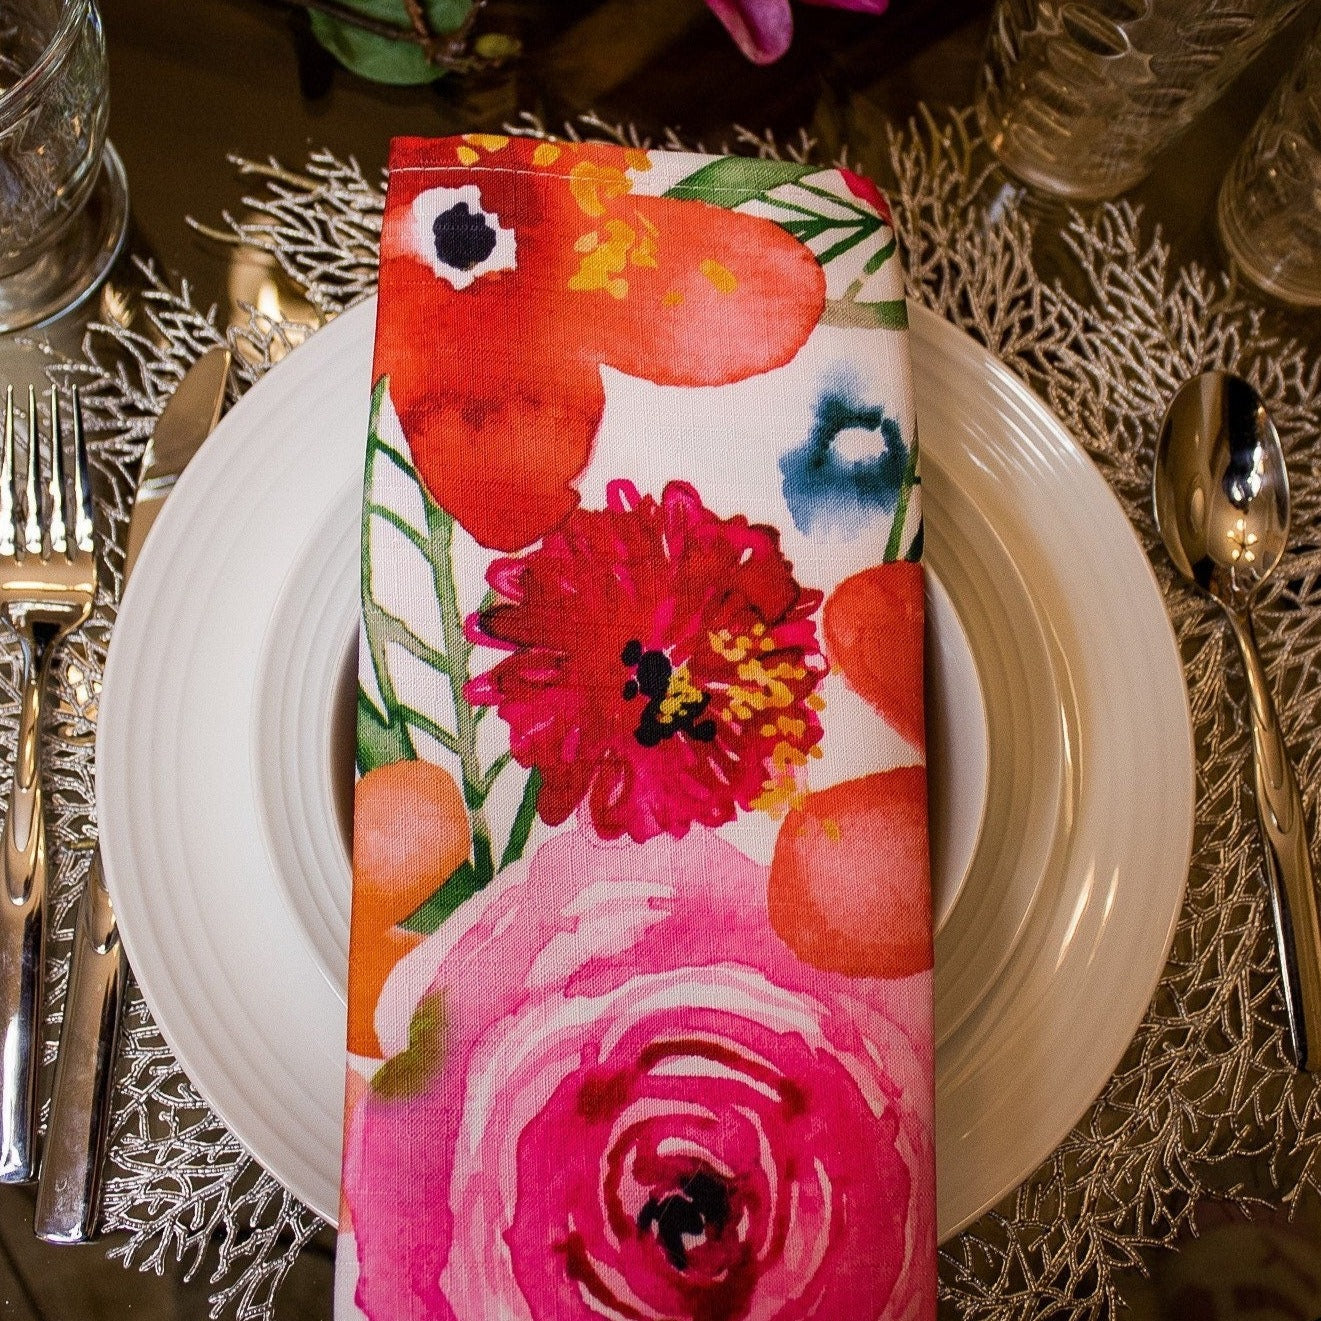  4) | Formal Dinner Table Decor | Cloth Table Linen | Summer Table | New Home Gift | Glam Home Decor - DiamondValeDecor